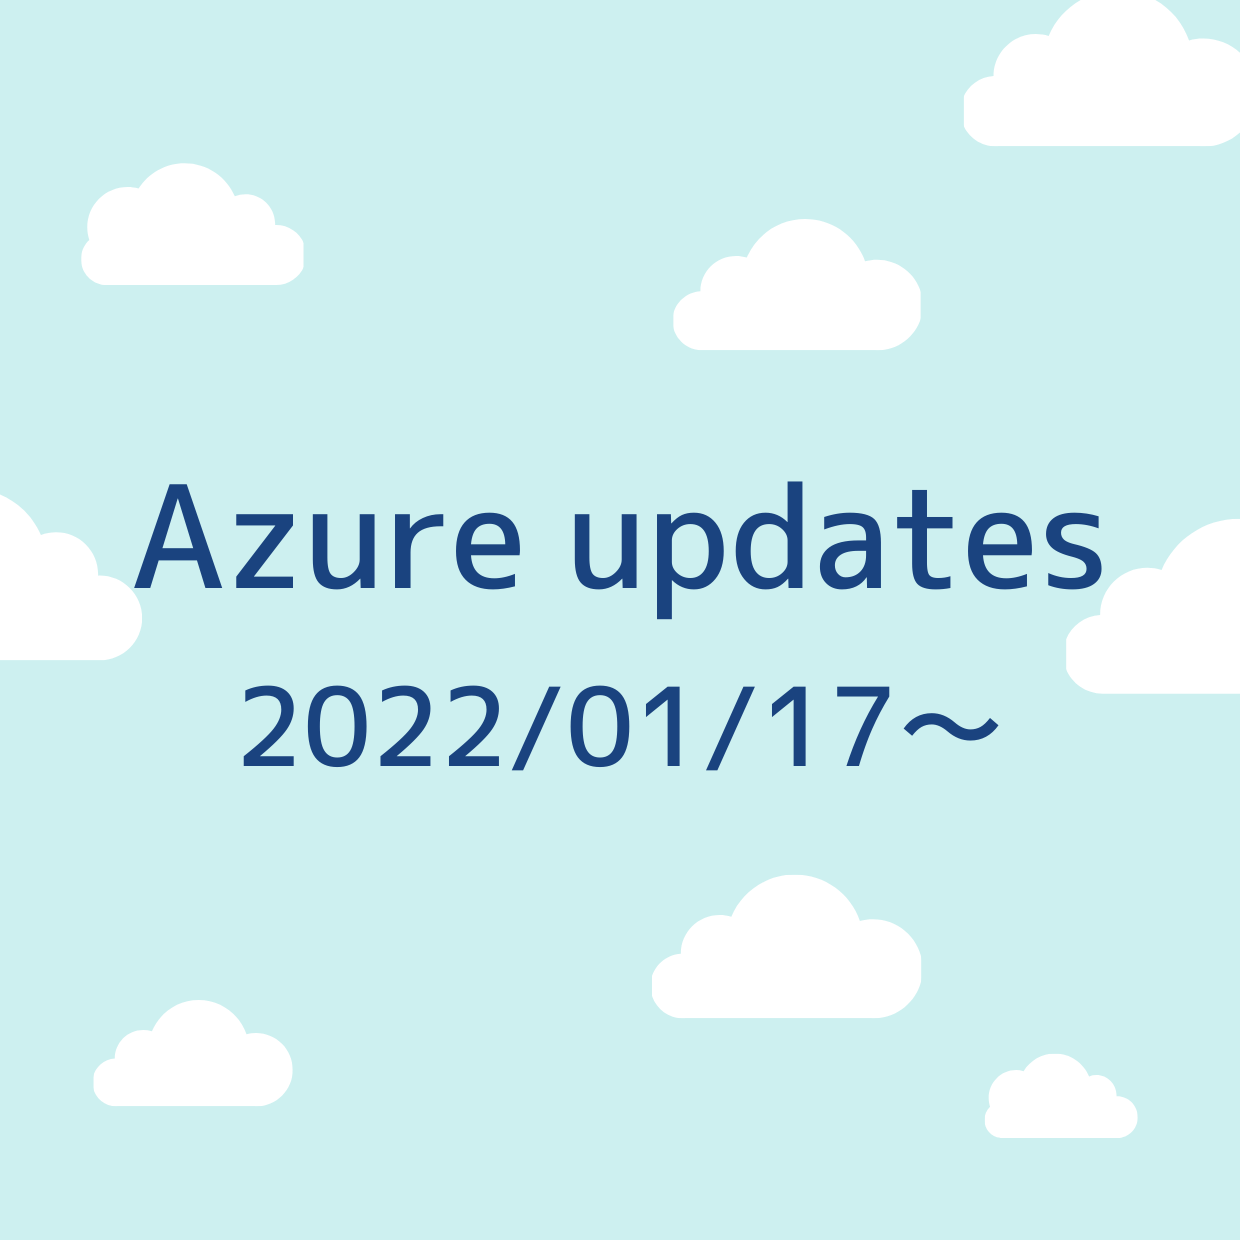 2022/01/17週の Azure updates 日本語速報